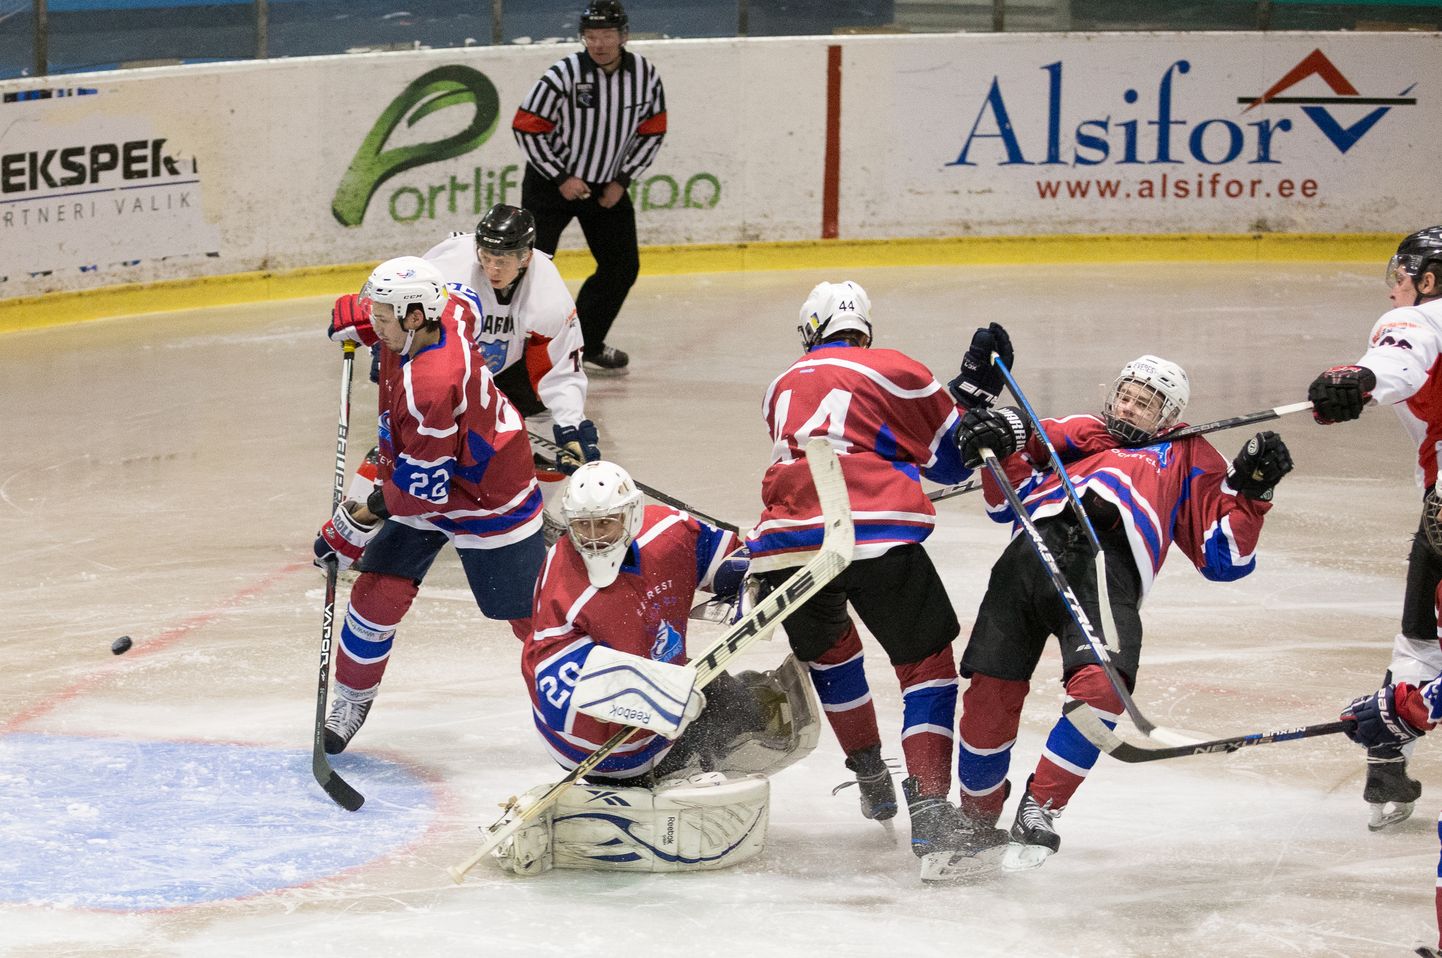 Поединки между двумя хоккейными командами Ида-Вирумаа - из Нарвы и Кохтла-Ярве - всегда носили боевой характер.